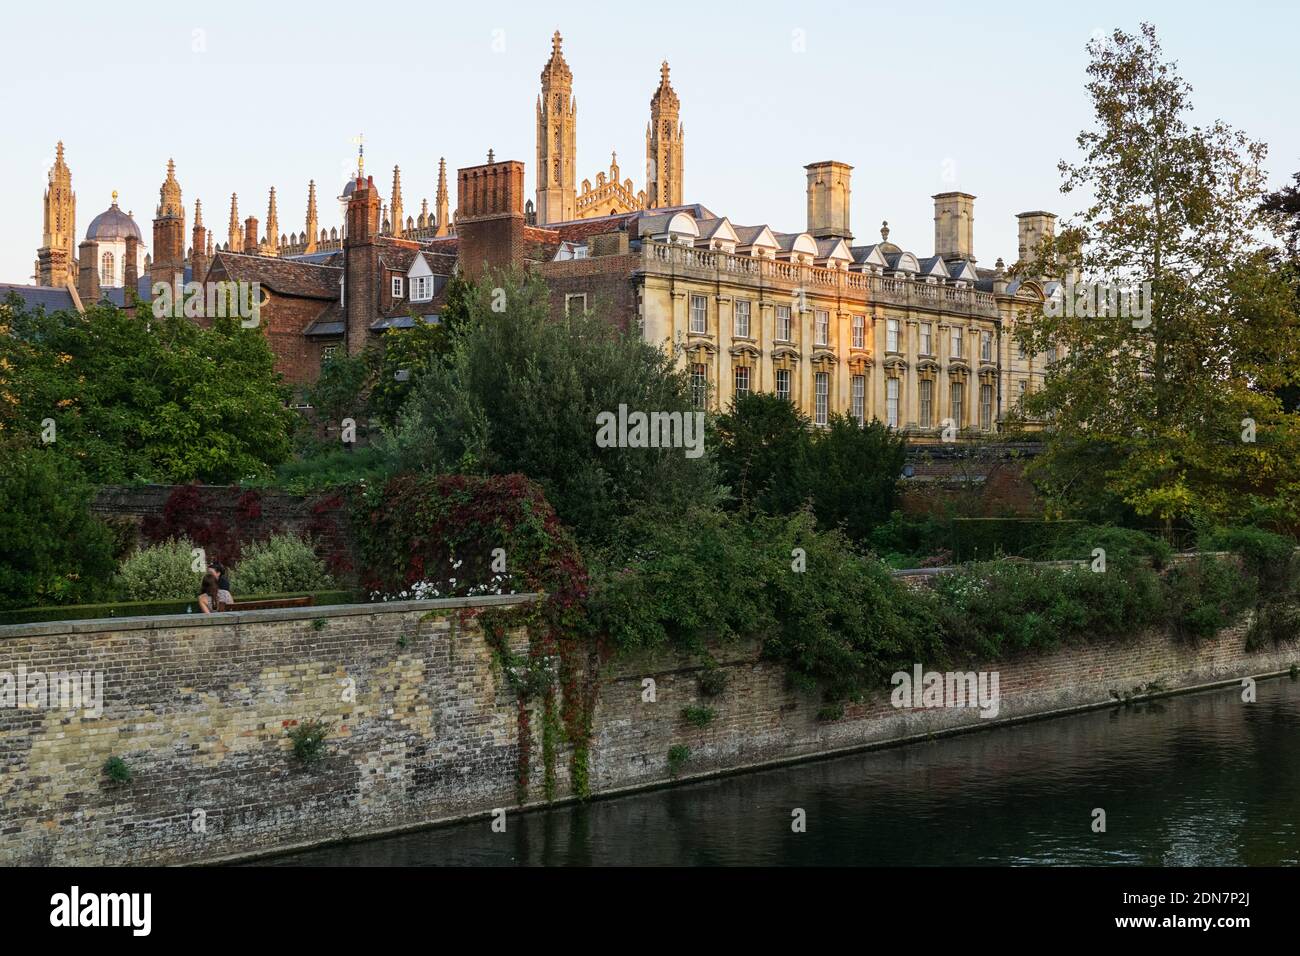 Université de Cambridge, Clare College Building, Cambridge, Cambridgeshire Angleterre Royaume-Uni Banque D'Images